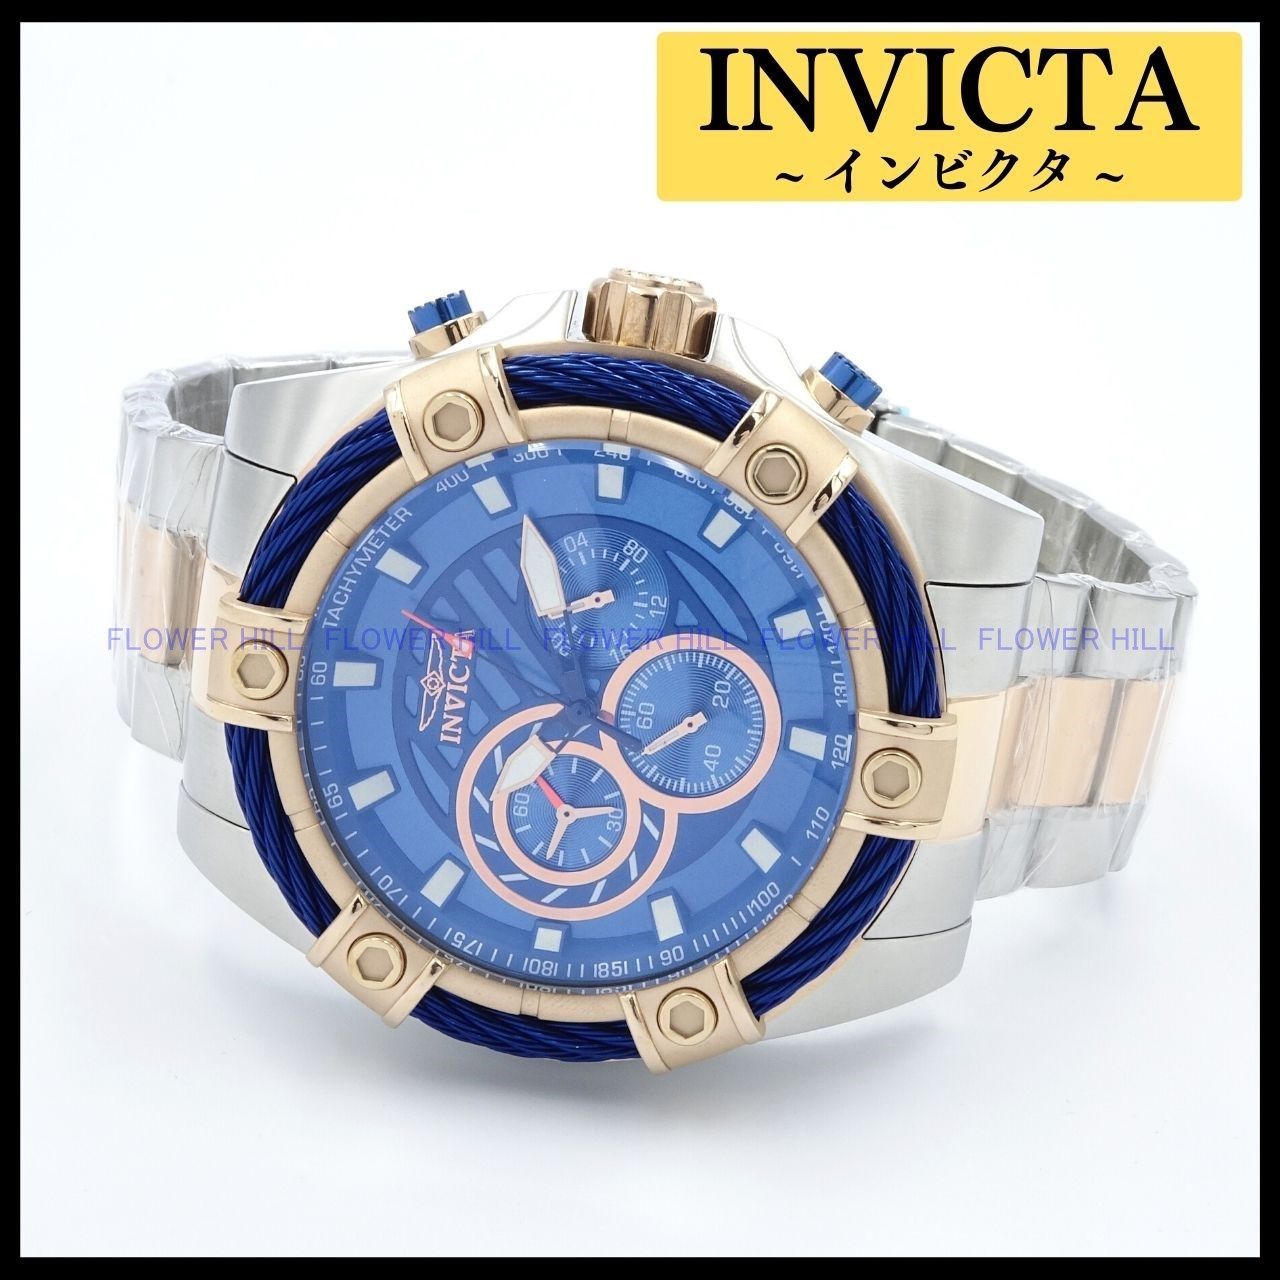 INVICTA インビクタ 腕時計 メンズ クォーツ クロノグラフ VOLT 32312 ブルー・ローズゴールド メタルバンド